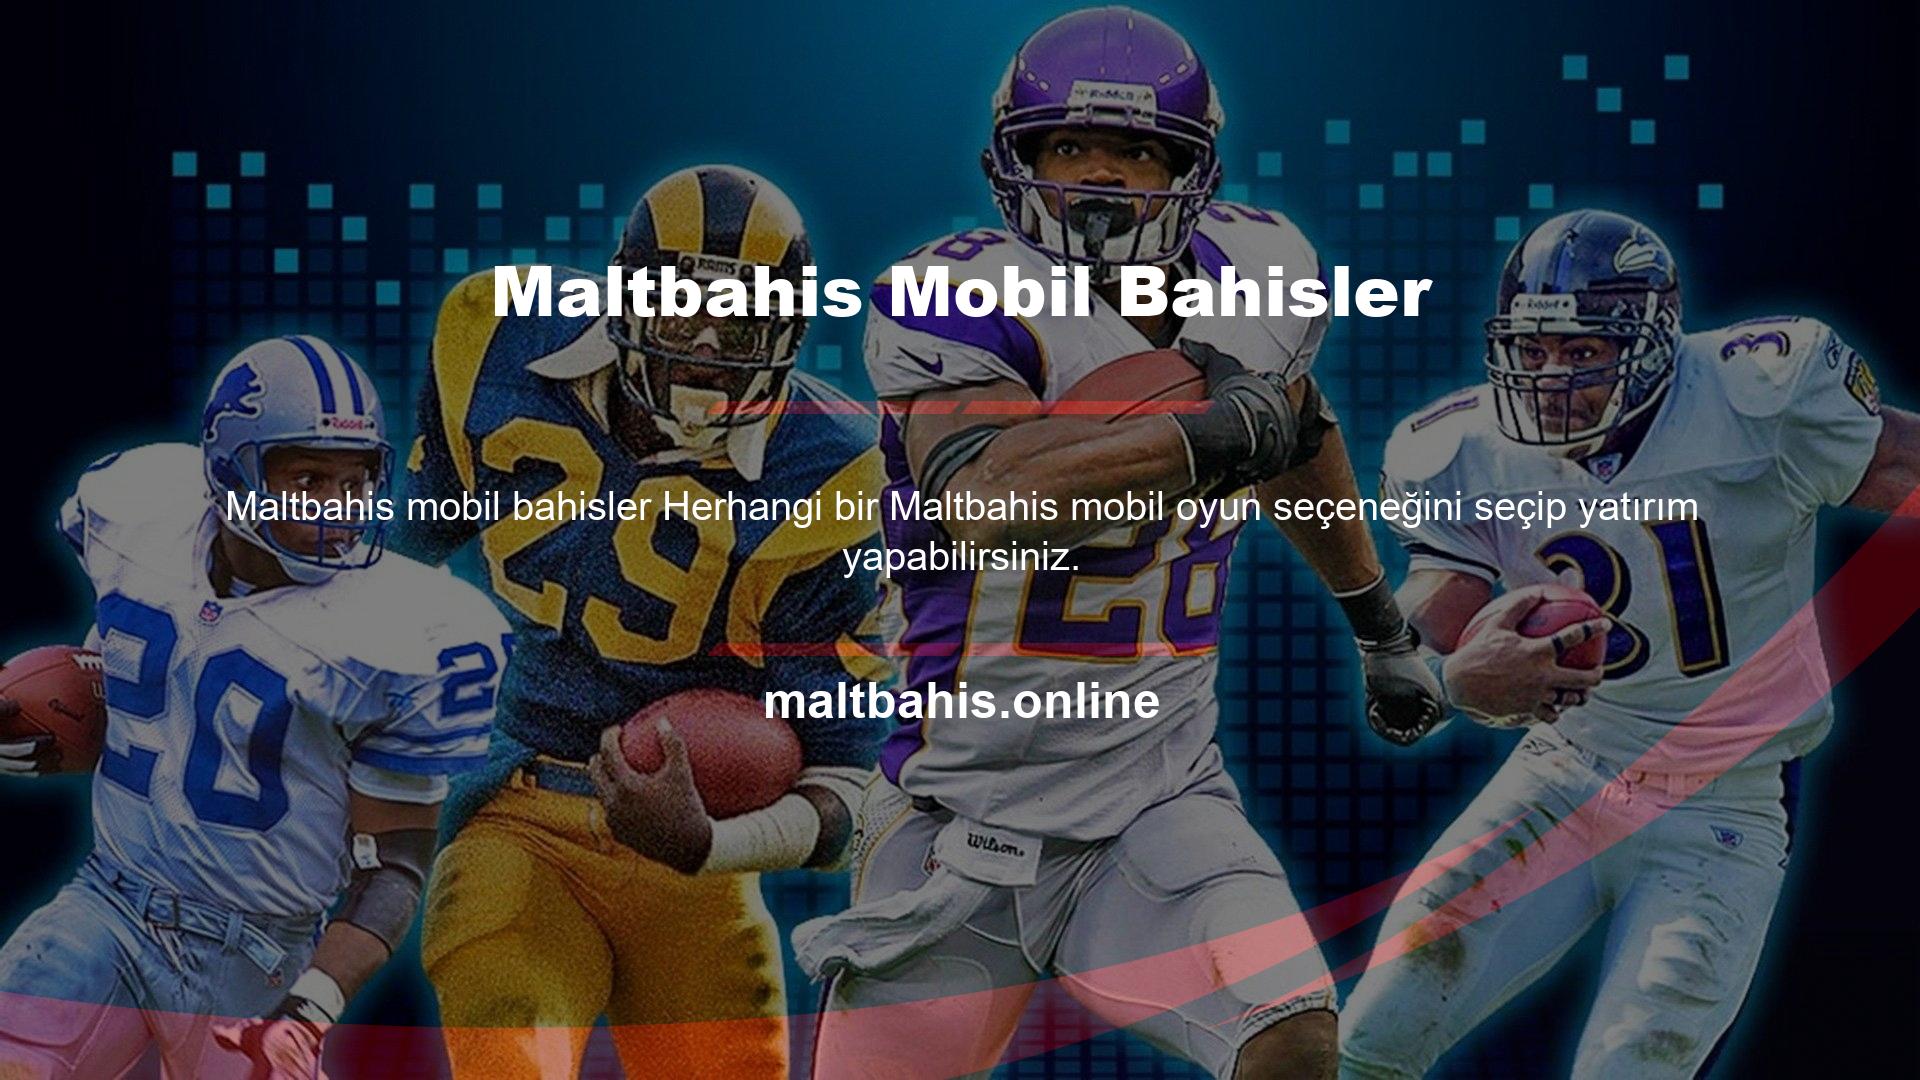 Maltbahis mobil sitesinde masaüstü sitesine benzer oyun alternatifleri bulunmaktadır